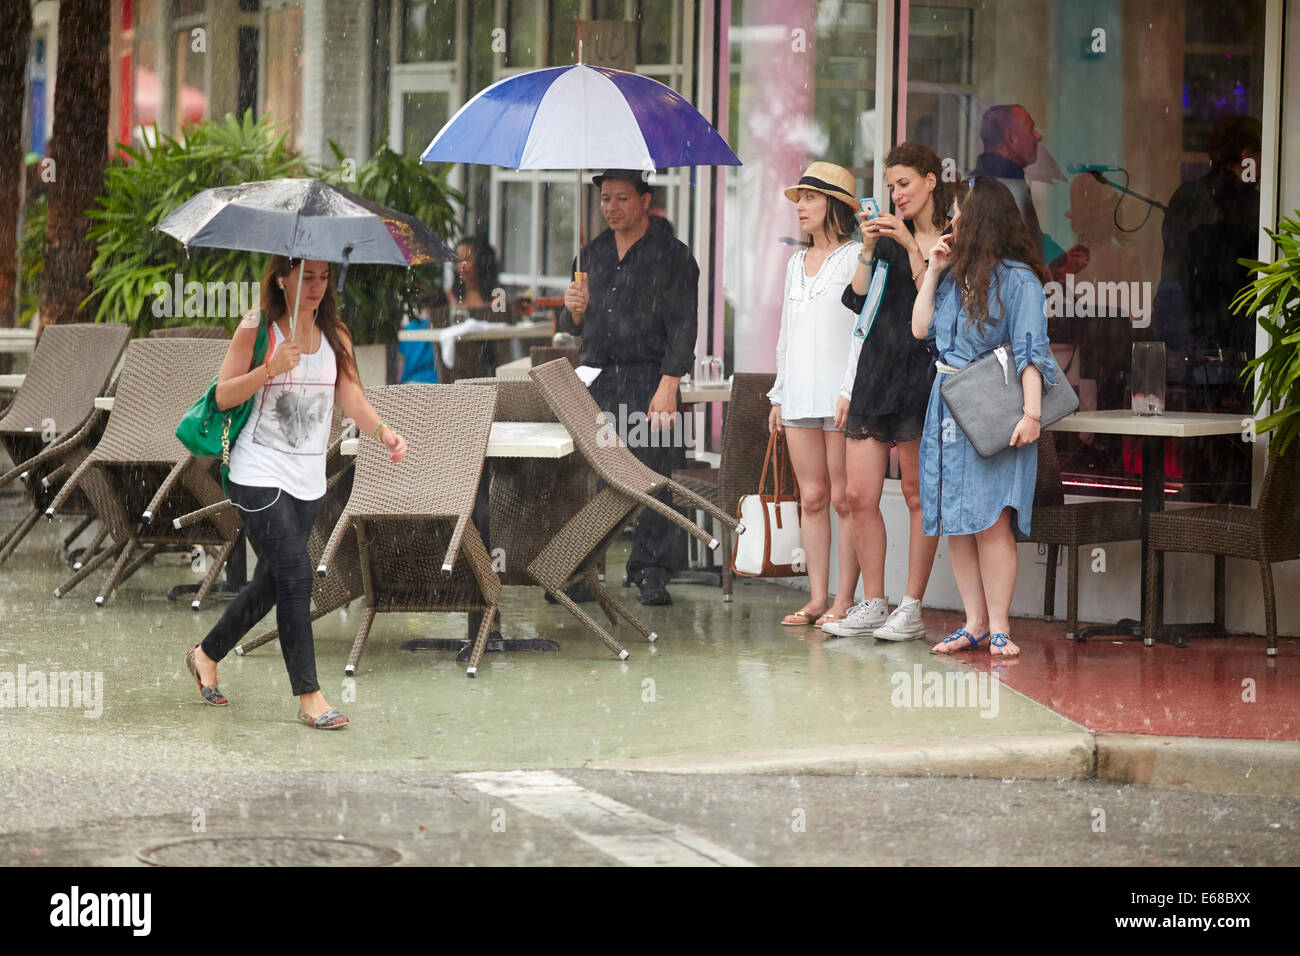 Tropischer Sturm bringt die Geschäfte und Restaurants zu einer stoppen, abgebildeten jungen Dame zu Fuß in den Regen als andere Tierheim Stockfoto